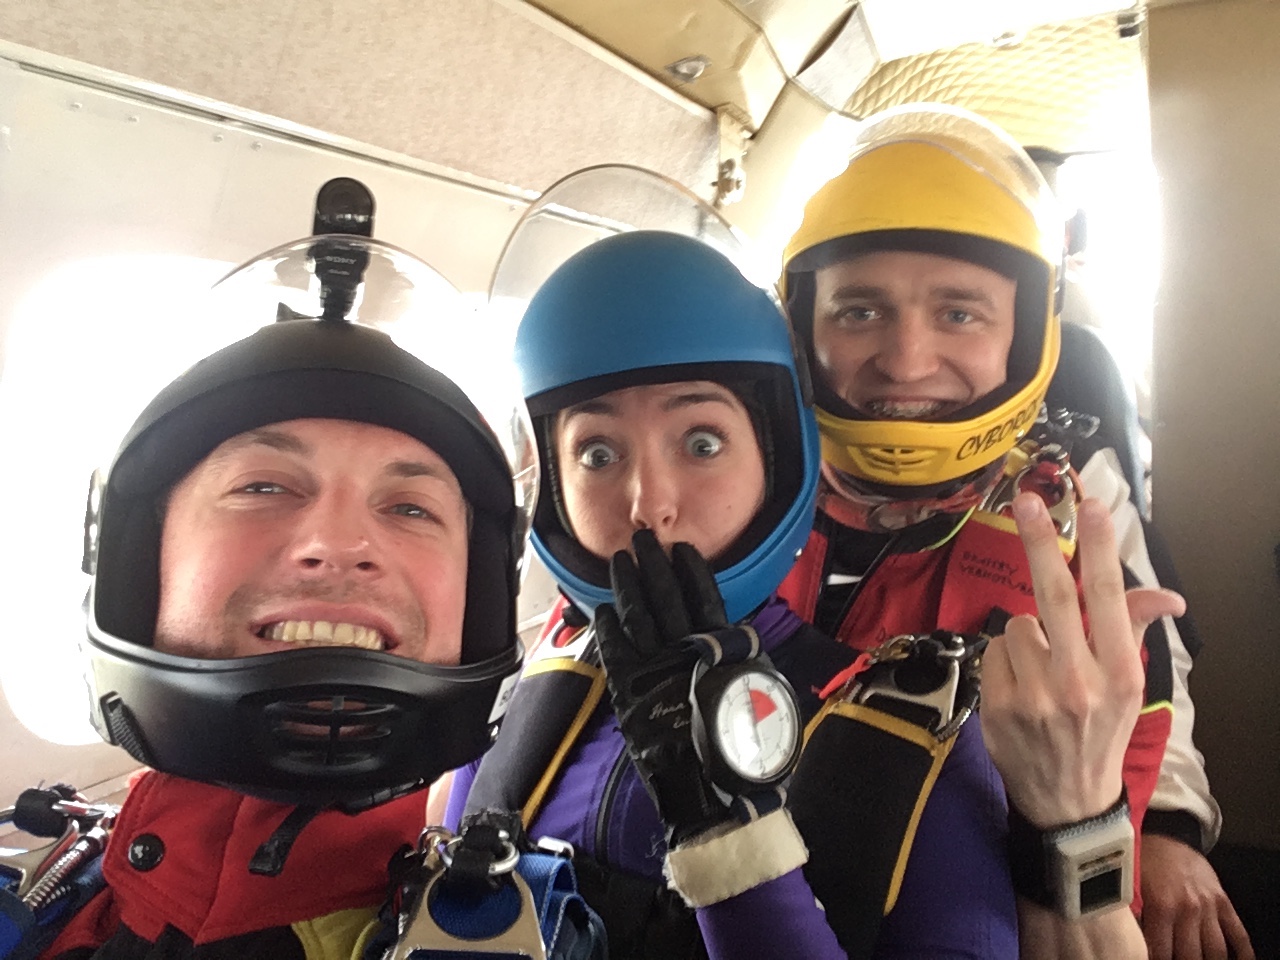 Skydive selfie